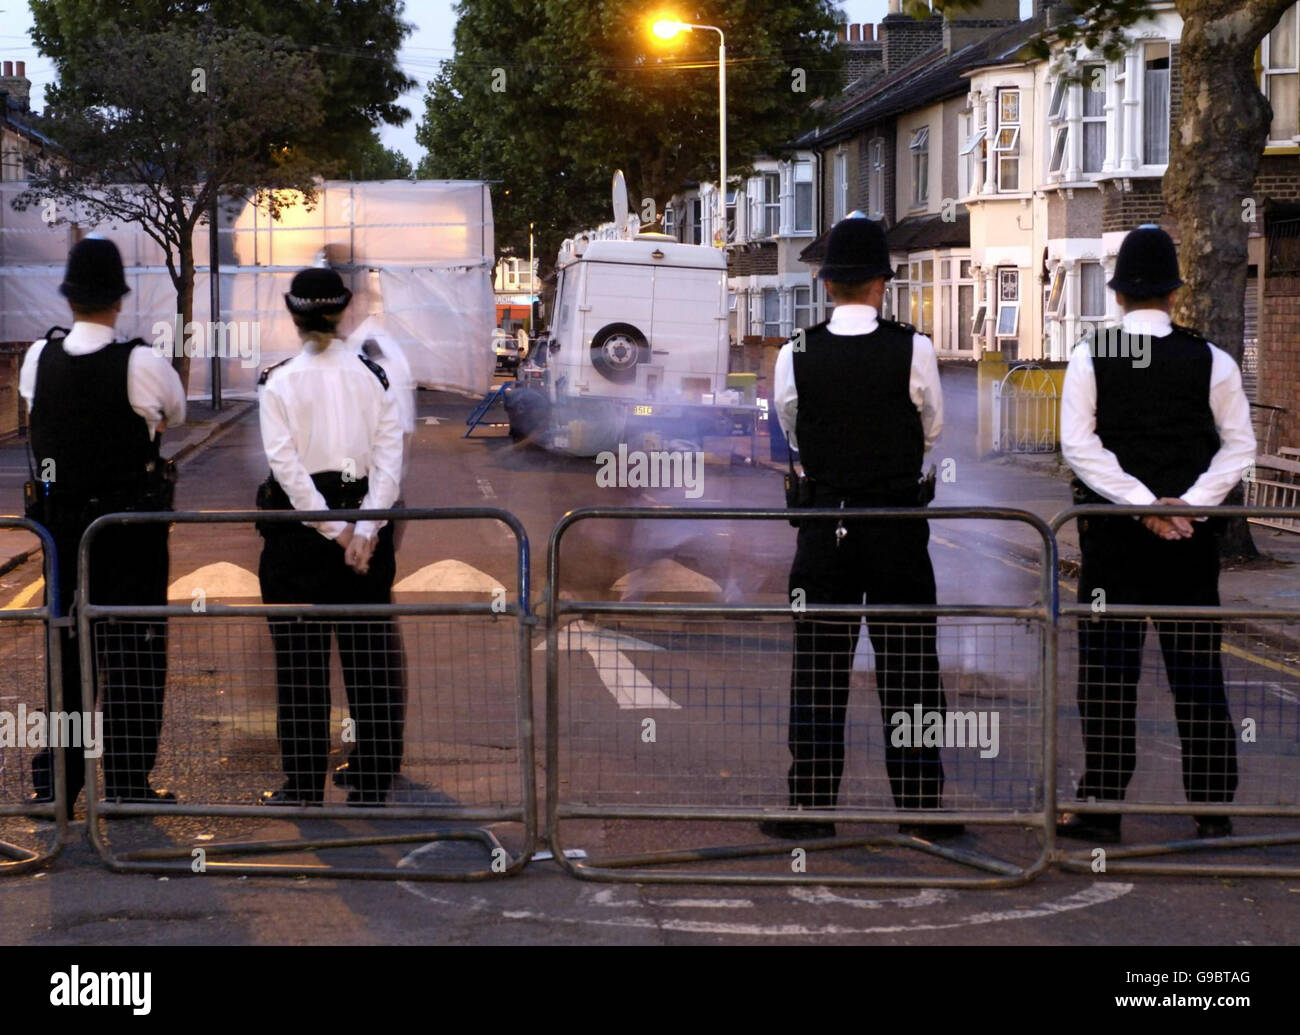 ANMERKUNG: AUFGENOMMEN MIT LANGSAMER BELICHTUNG die Polizei bewacht den Eingang zur Lansdown Road in Forest Gate, East London. Die beiden Brüder, die bei dem umstrittenen Anti-Terror-Angriff in der vergangenen Woche auf der Straße verhaftet wurden, wurden heute Abend ohne Anklage freigelassen. Stockfoto